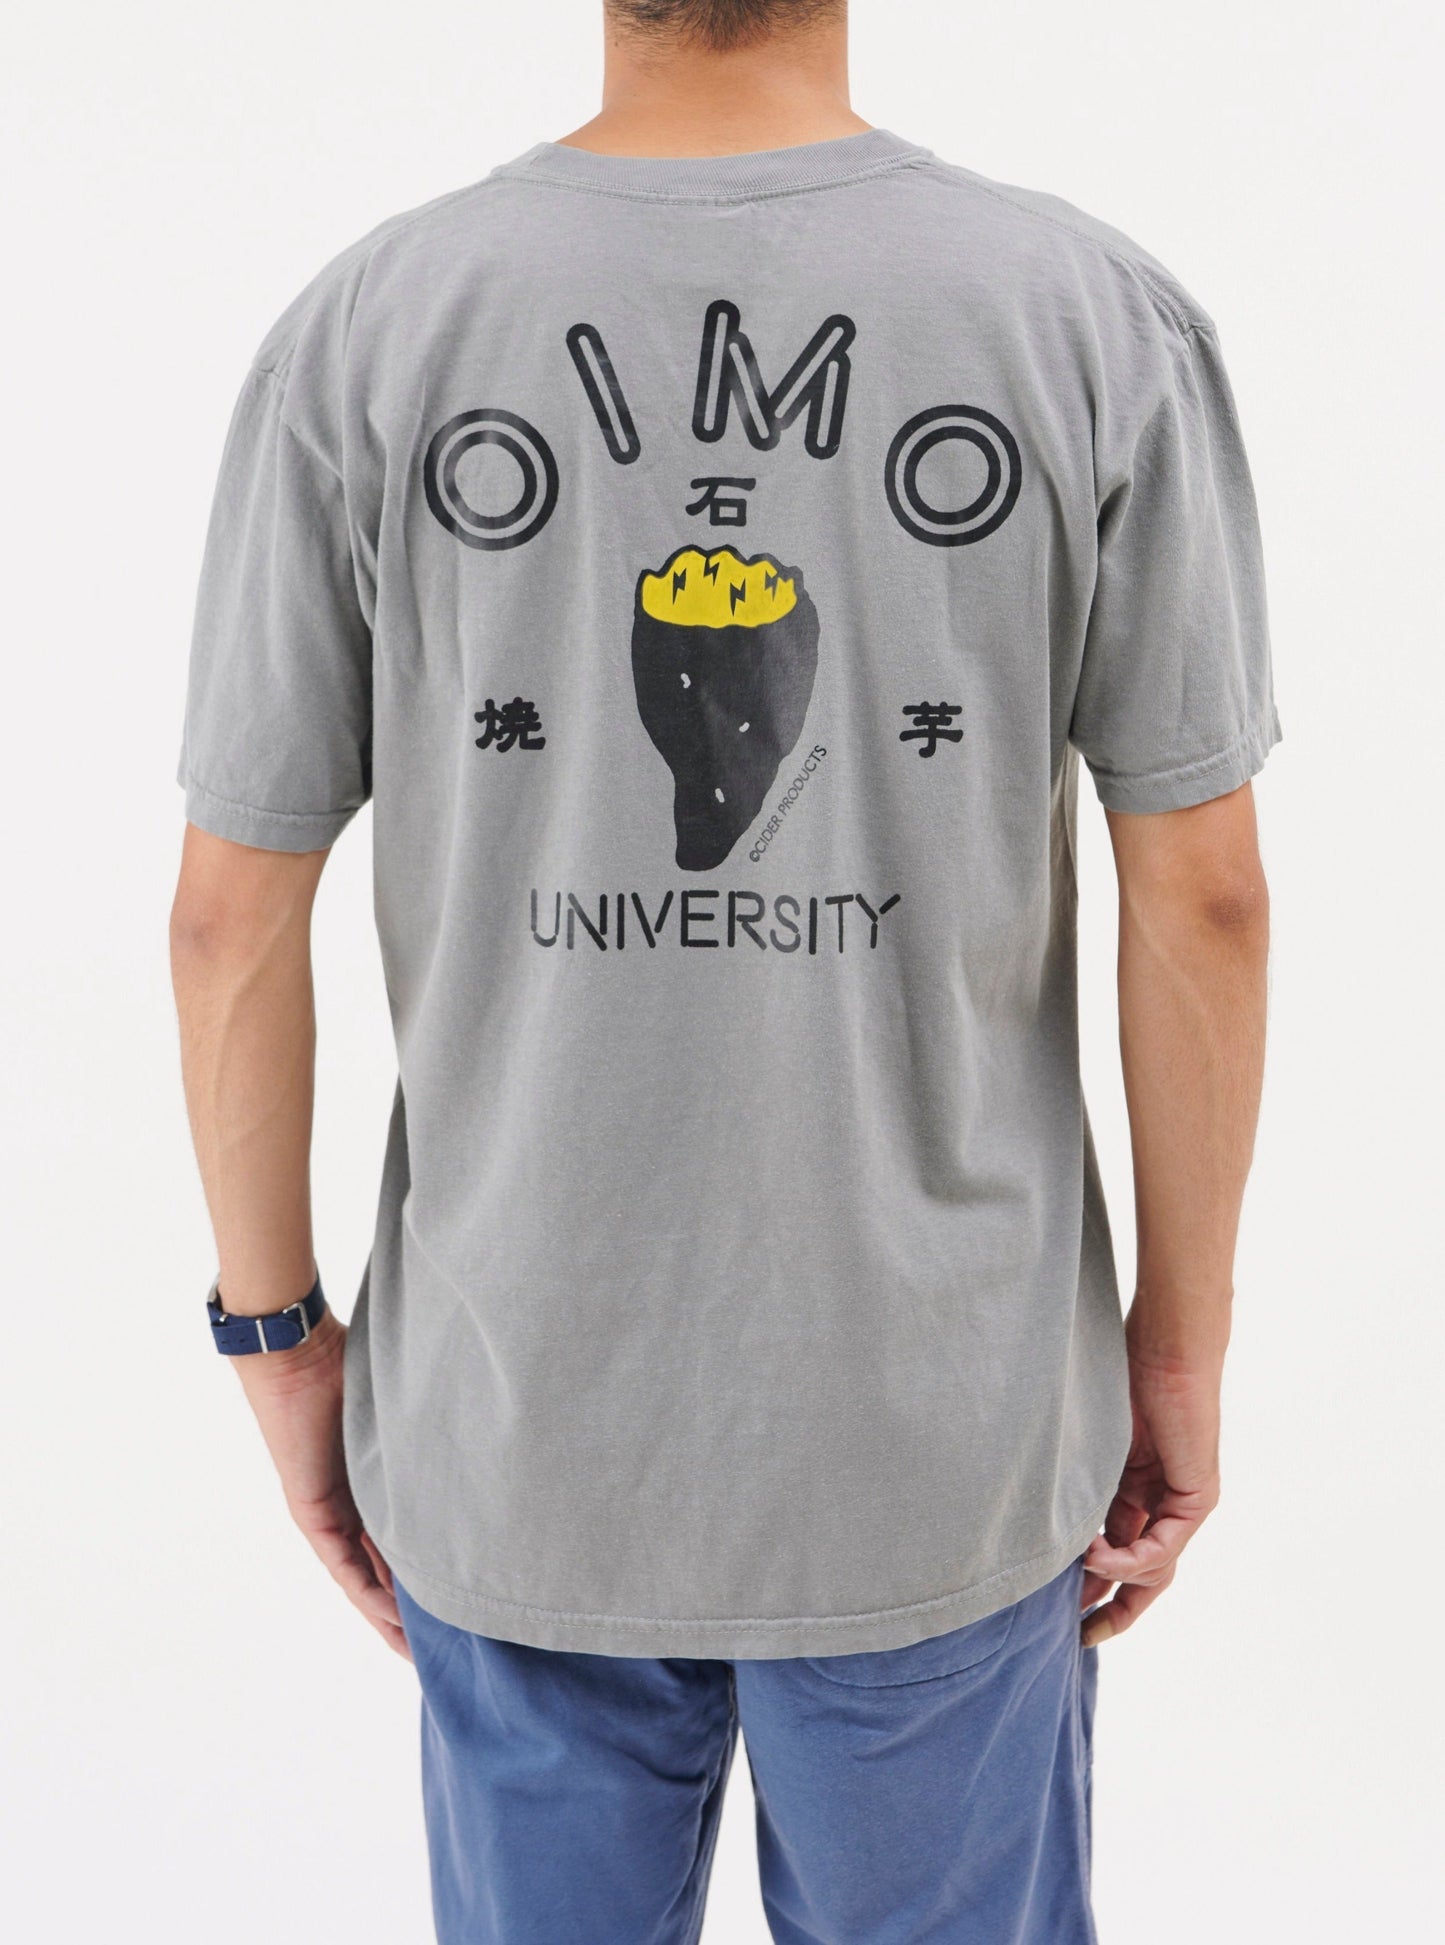 OIMO UNIV. Tshirt / ペッパー